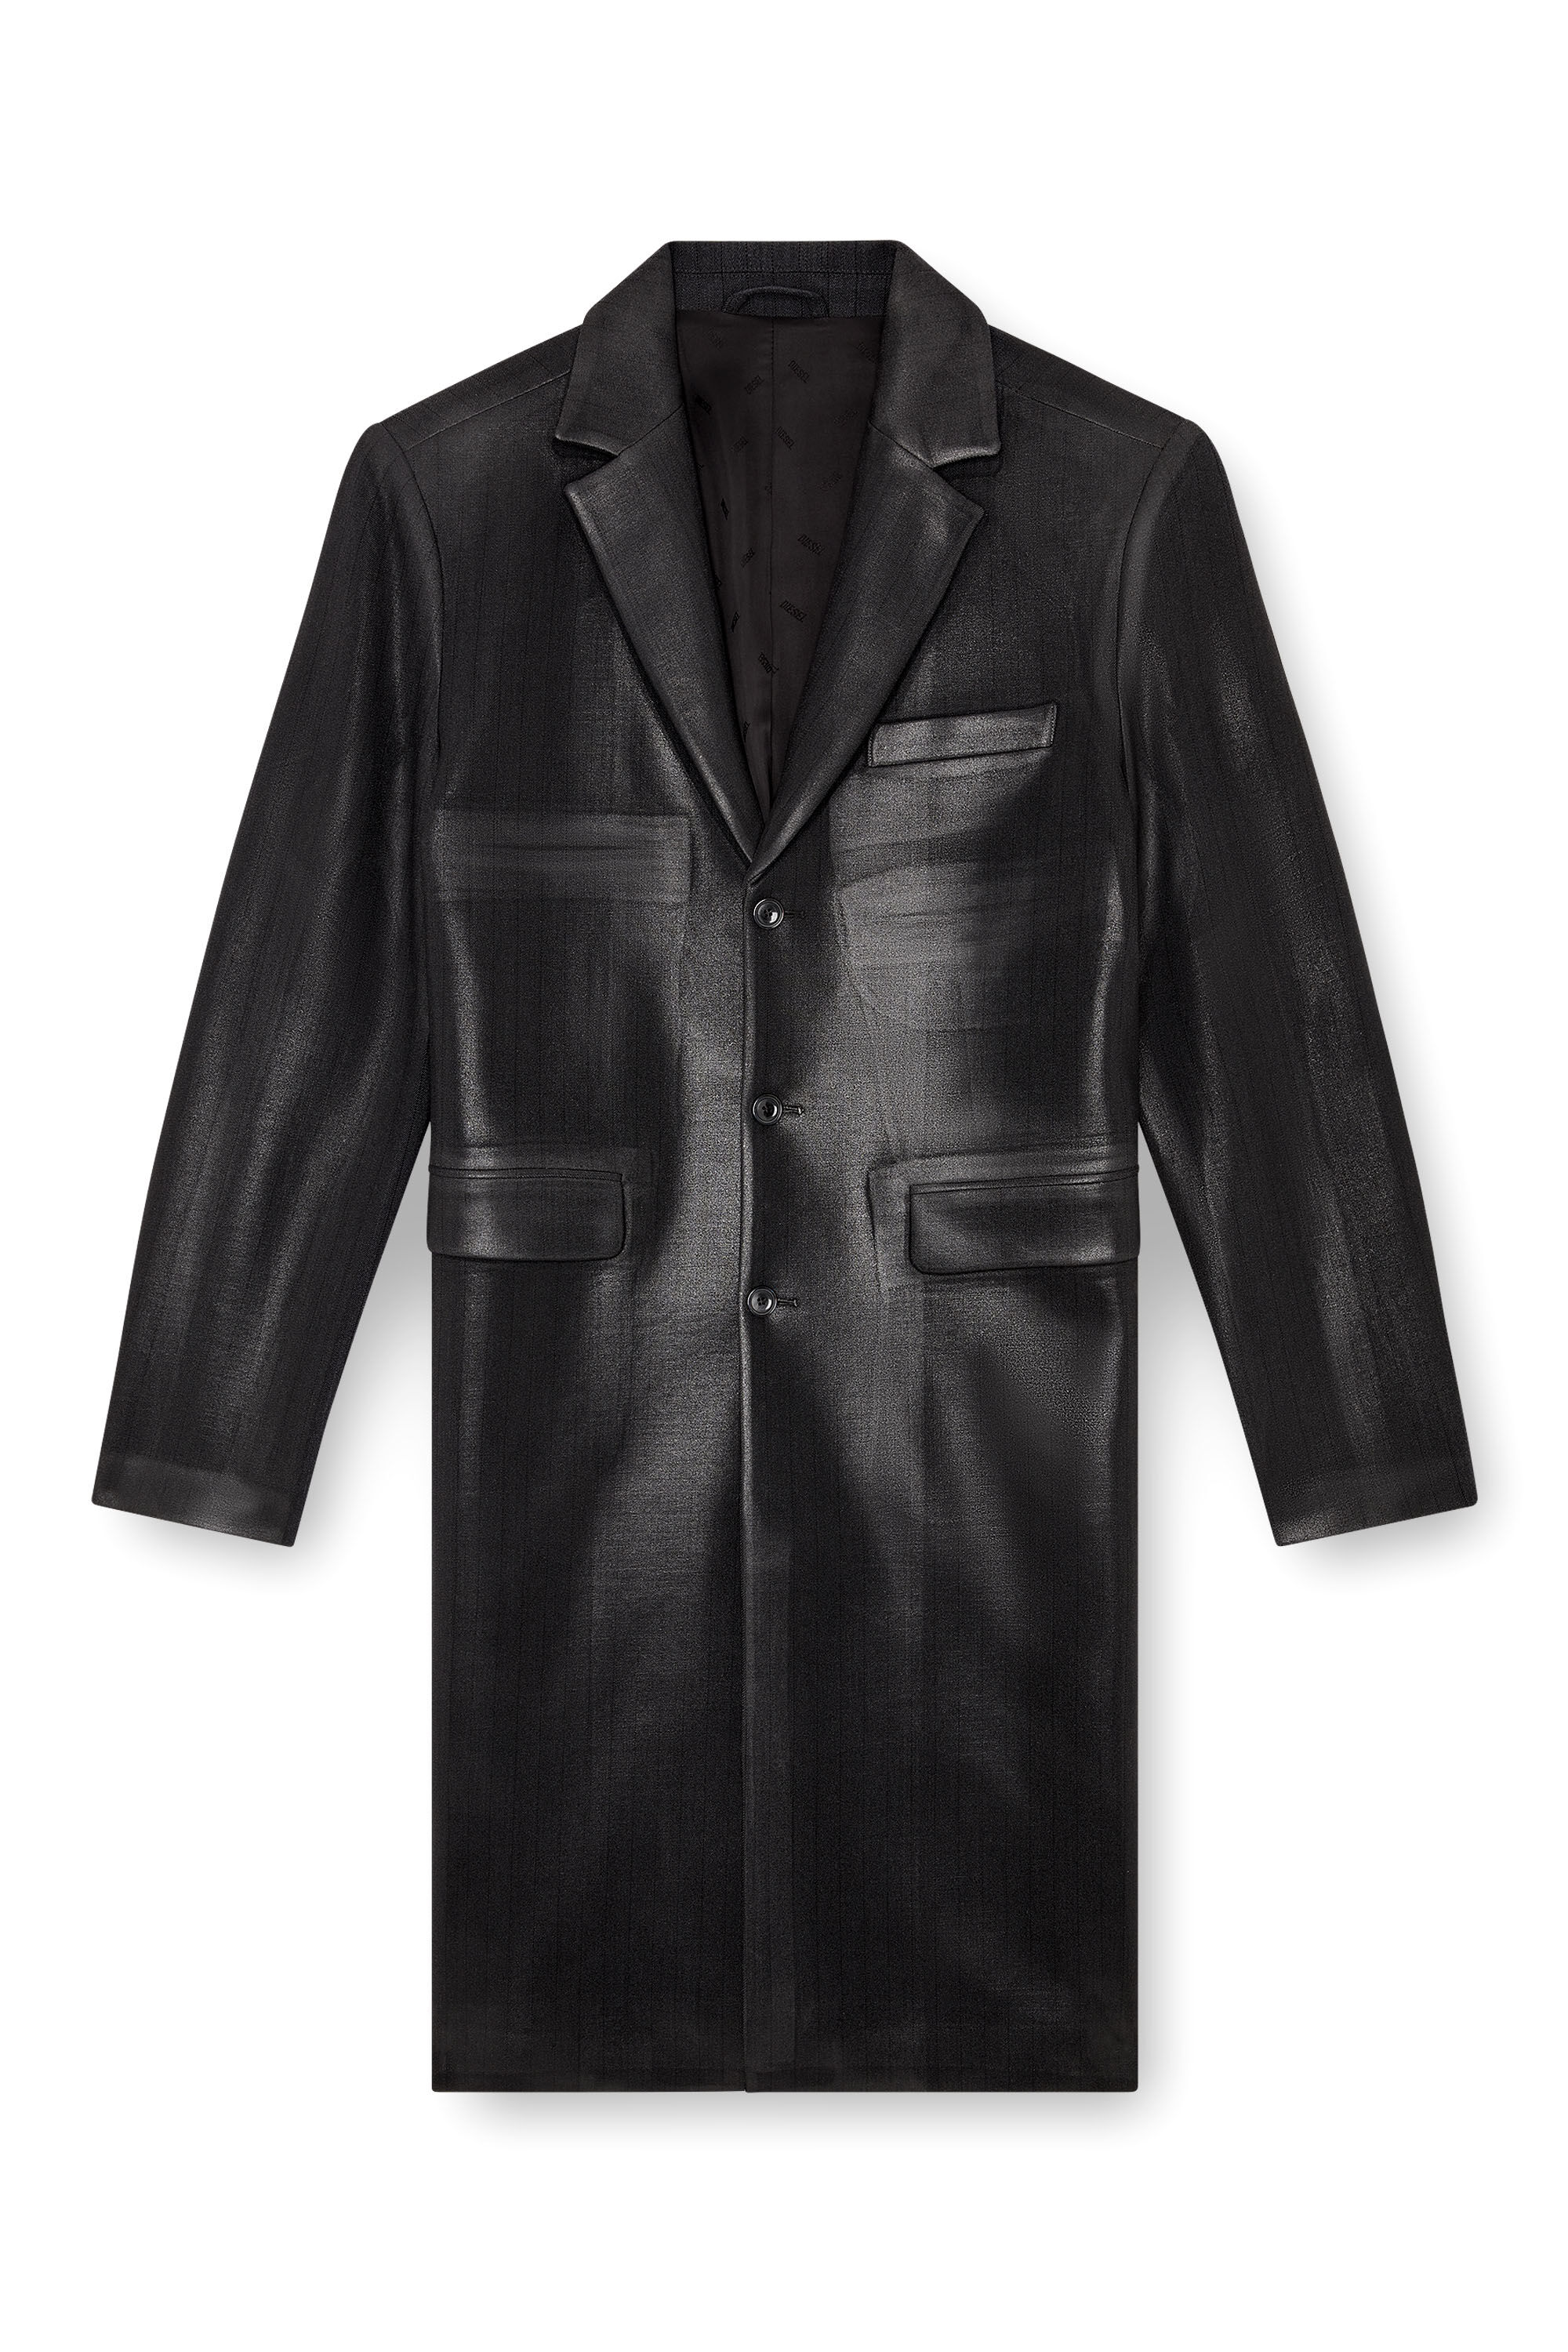 Diesel - J-DENNER, Man Coat in pinstriped cool wool in Black - Image 2